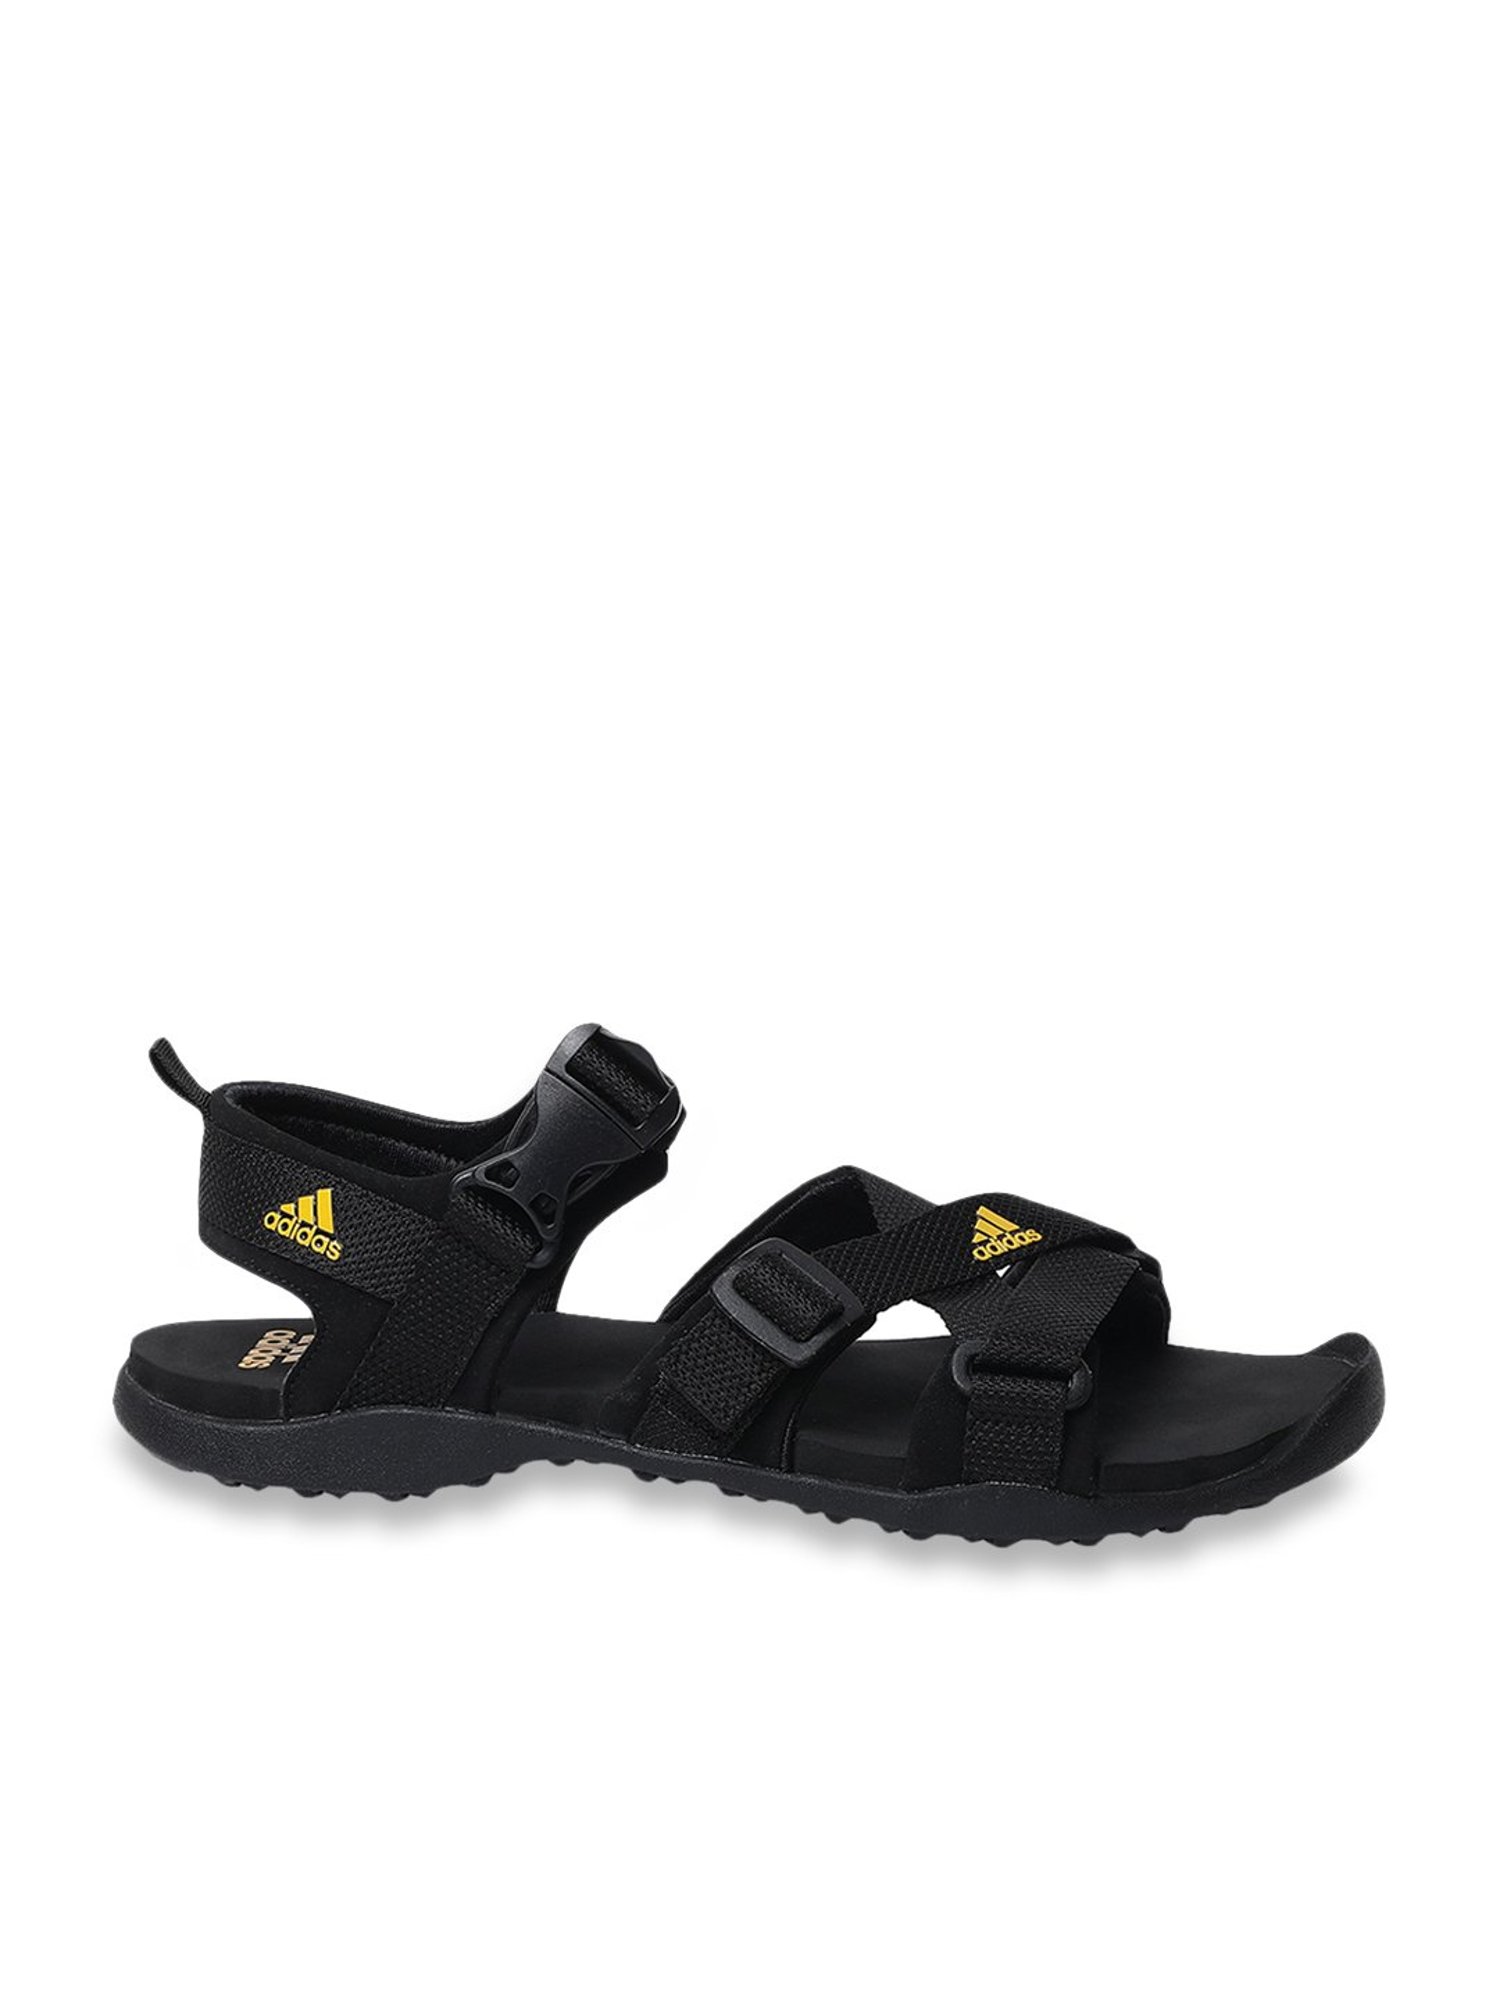 Adidas Gladi II Black Floater Sandals 